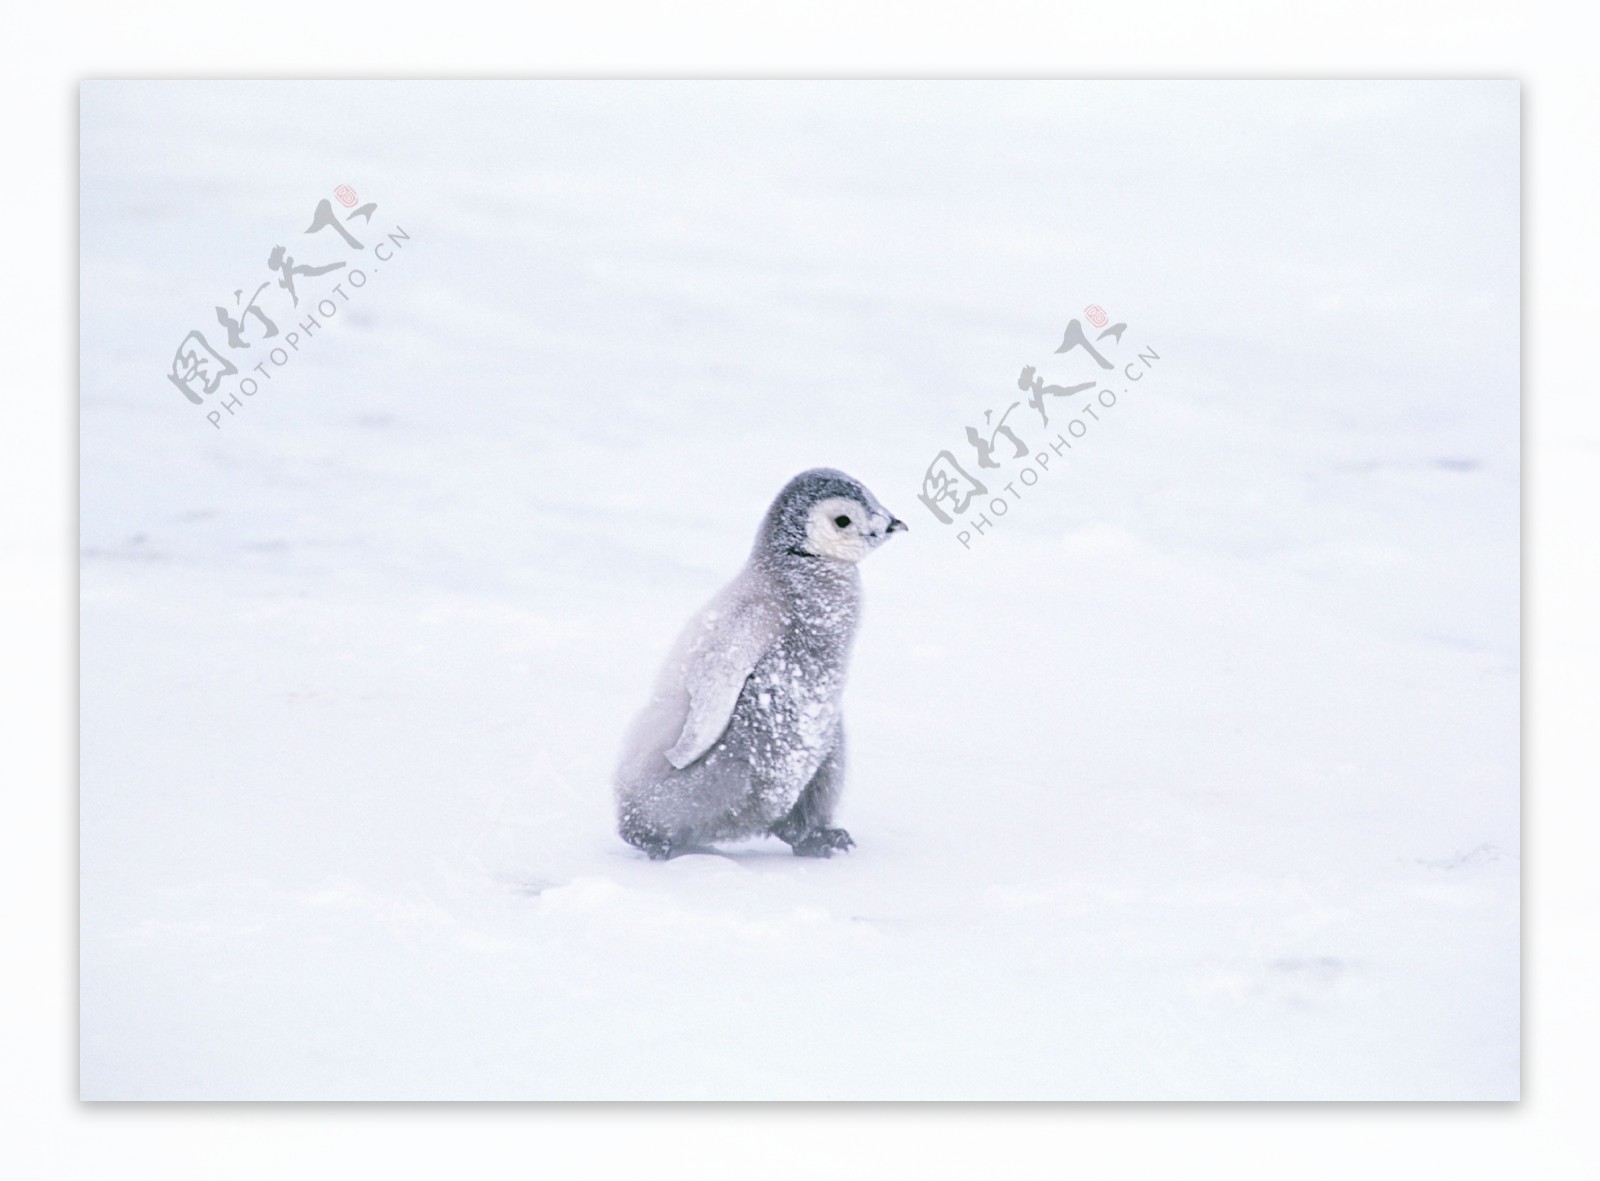 雪地上的小企鹅图片